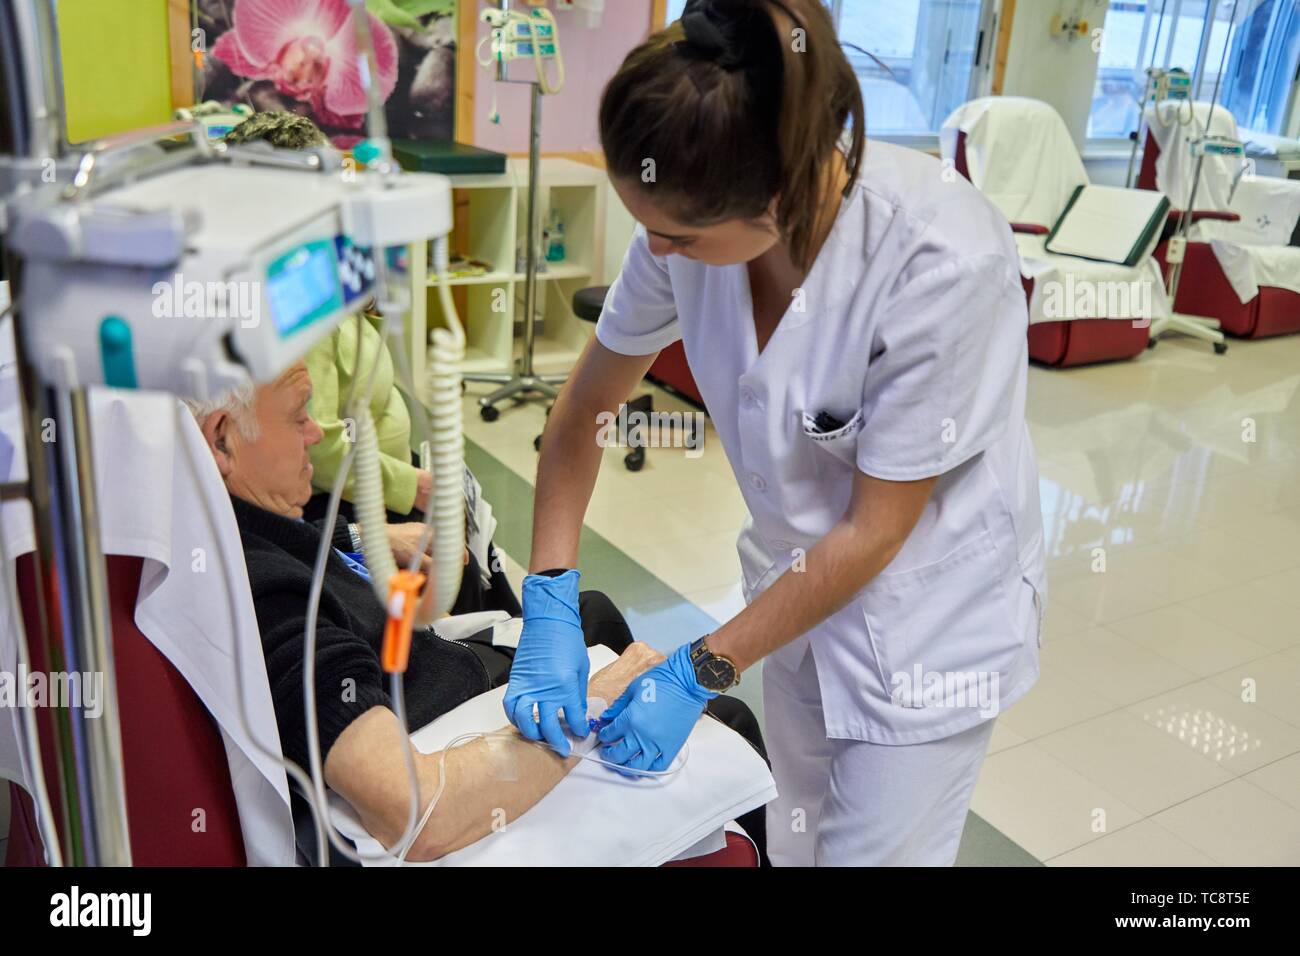 Nurse putting médicament par voie intraveineuse à un patient, la chimiothérapie, l'oncologie, l'hôpital Donostia, San Sebastian, Gipuzkoa, Pays Basque, Espagne Banque D'Images